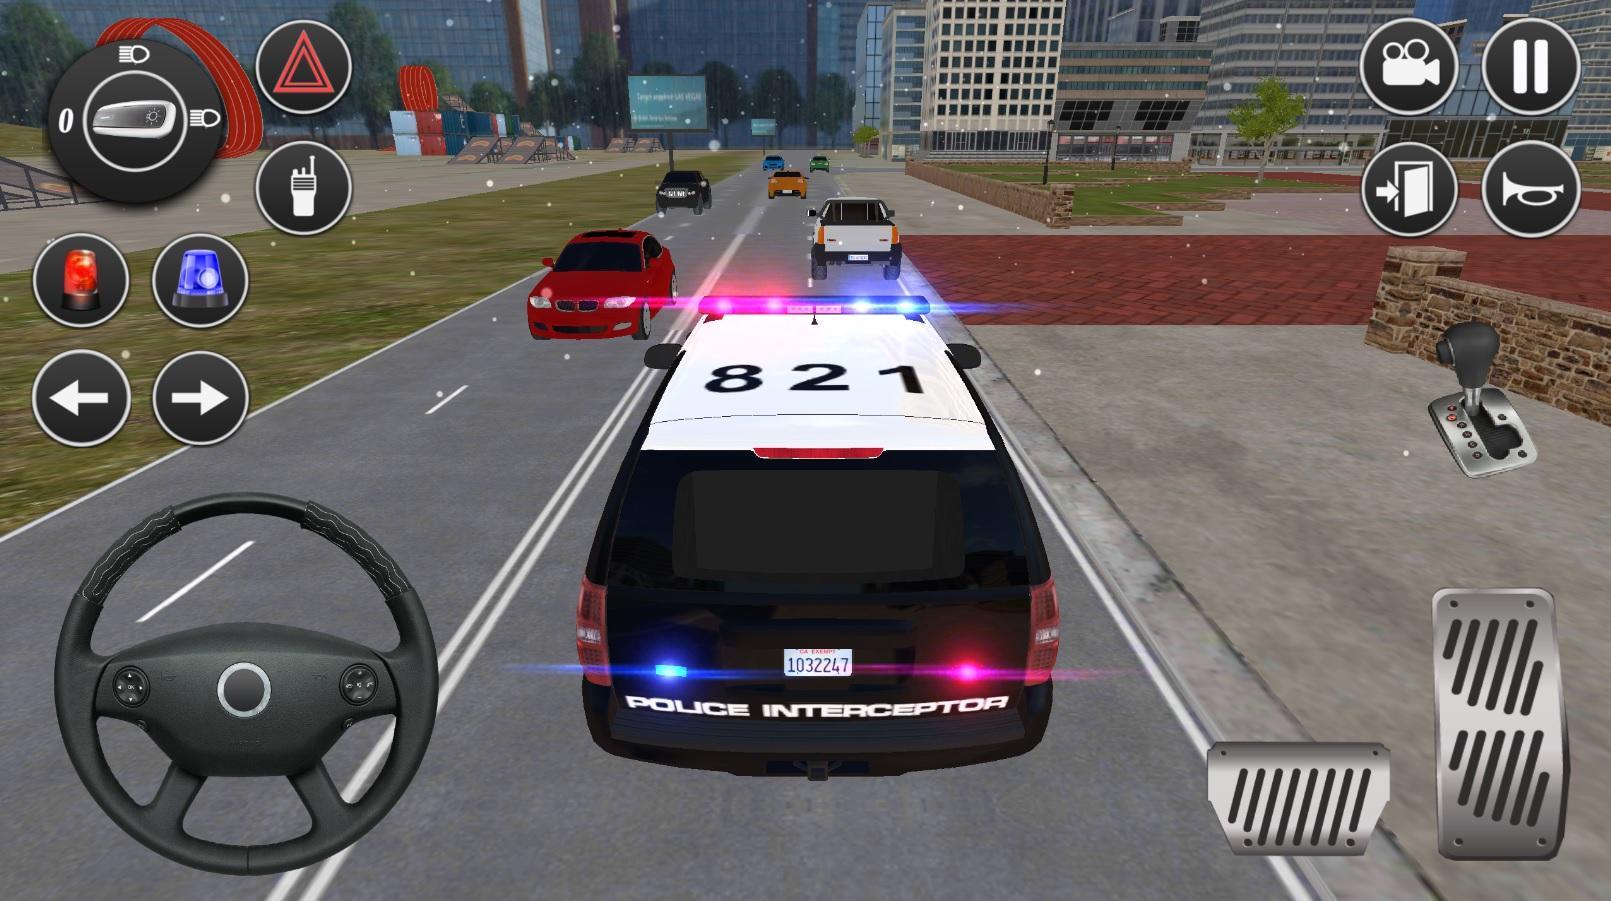 Screenshot 1 of Pemanduan Suv Polis Amerika: Permainan Kereta 2020 1.2